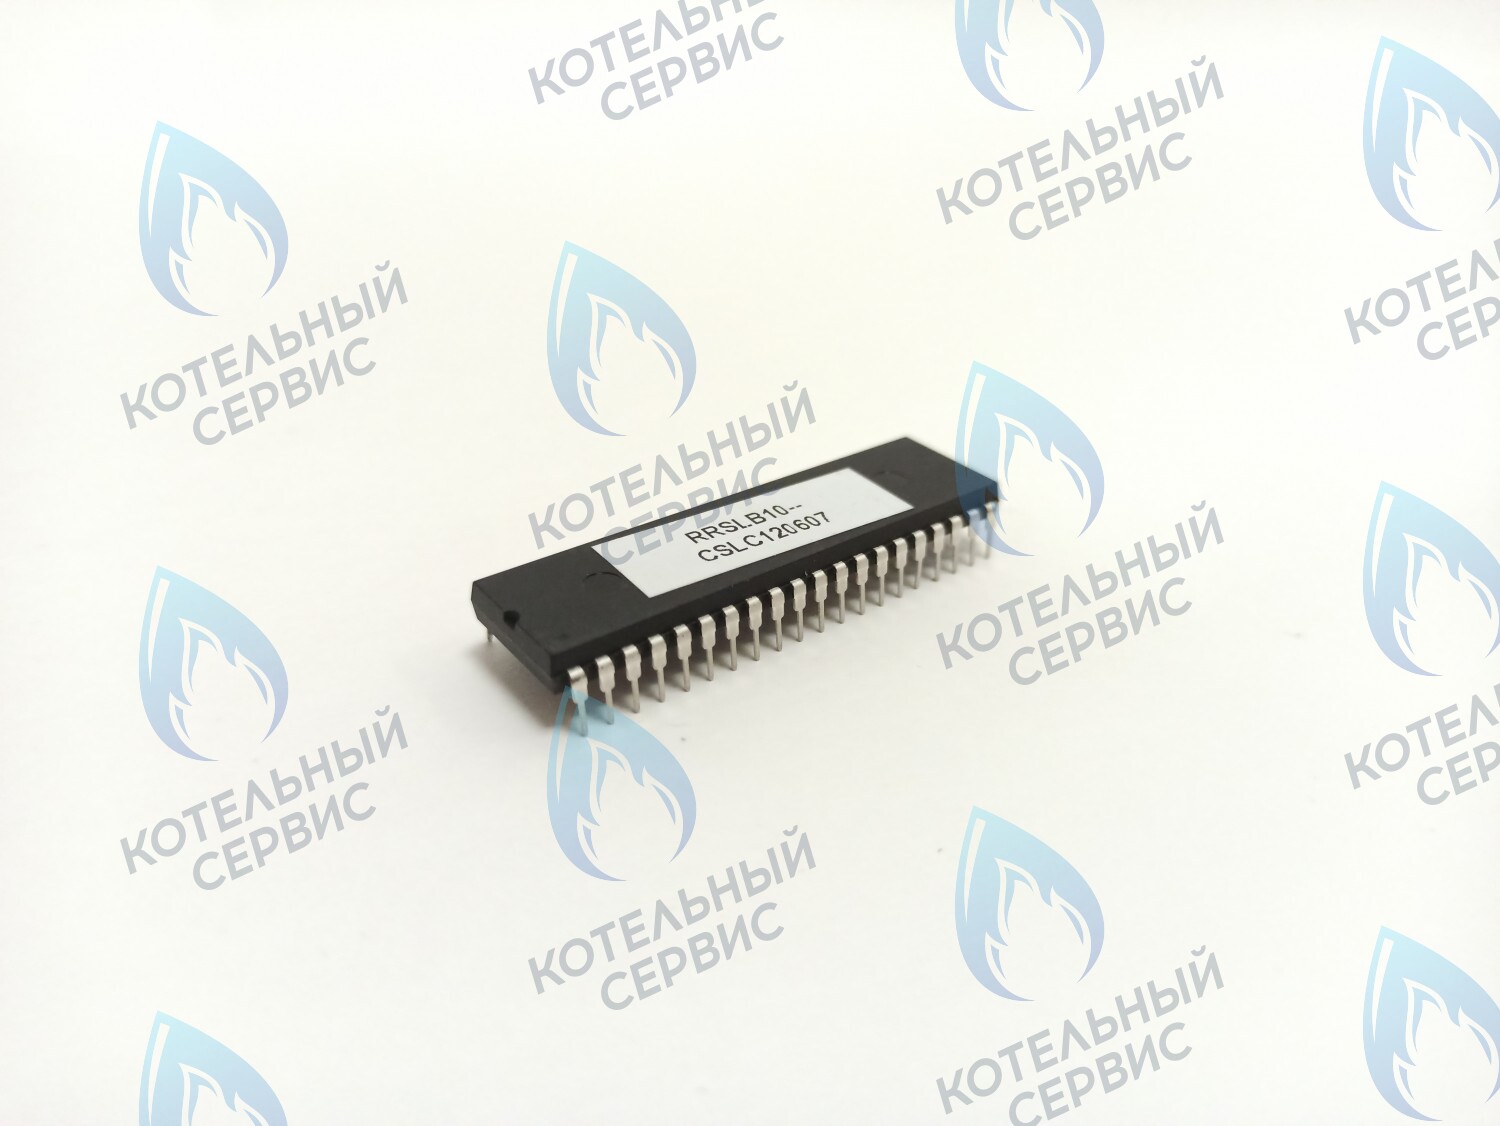 CB020-B10-845-SINGLE Процессор Electrolux Basic S 18/24/30 Fi (одноконтурный) газовый клапан SIT 845 RRSLB10-CSLC120607 (1310028B, AA04030025) в Барнауле